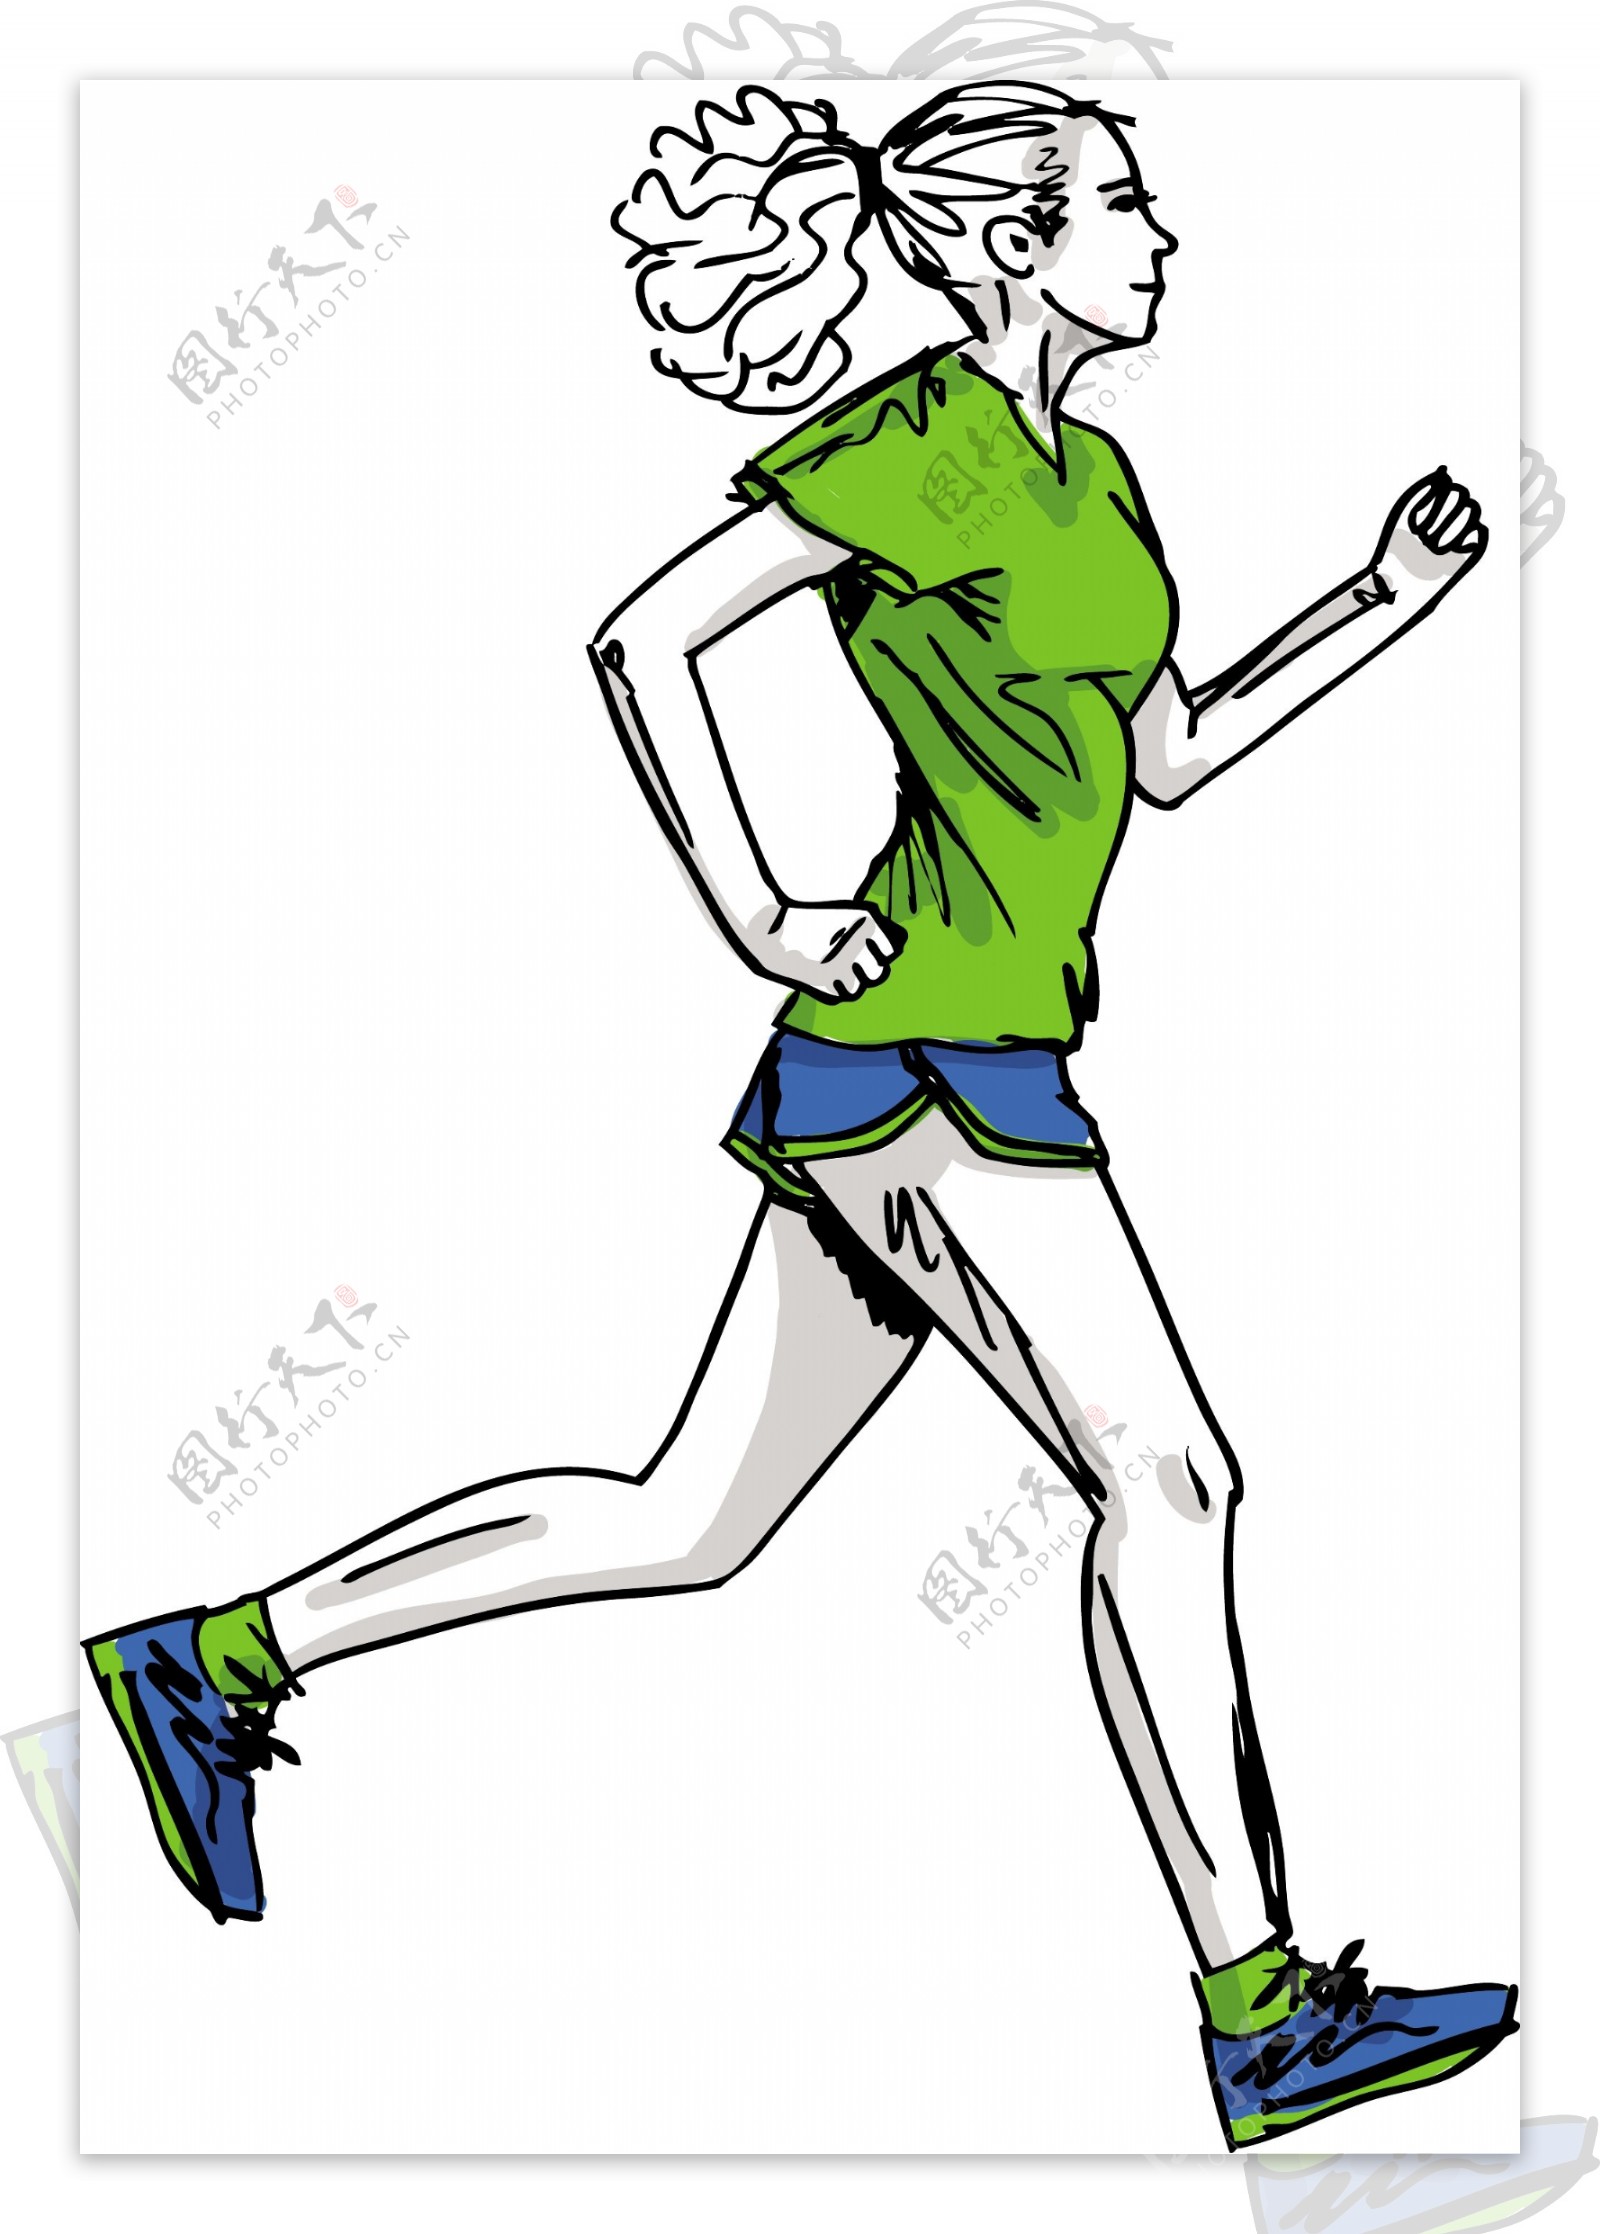 的女子马拉松运动员矢量插画草图